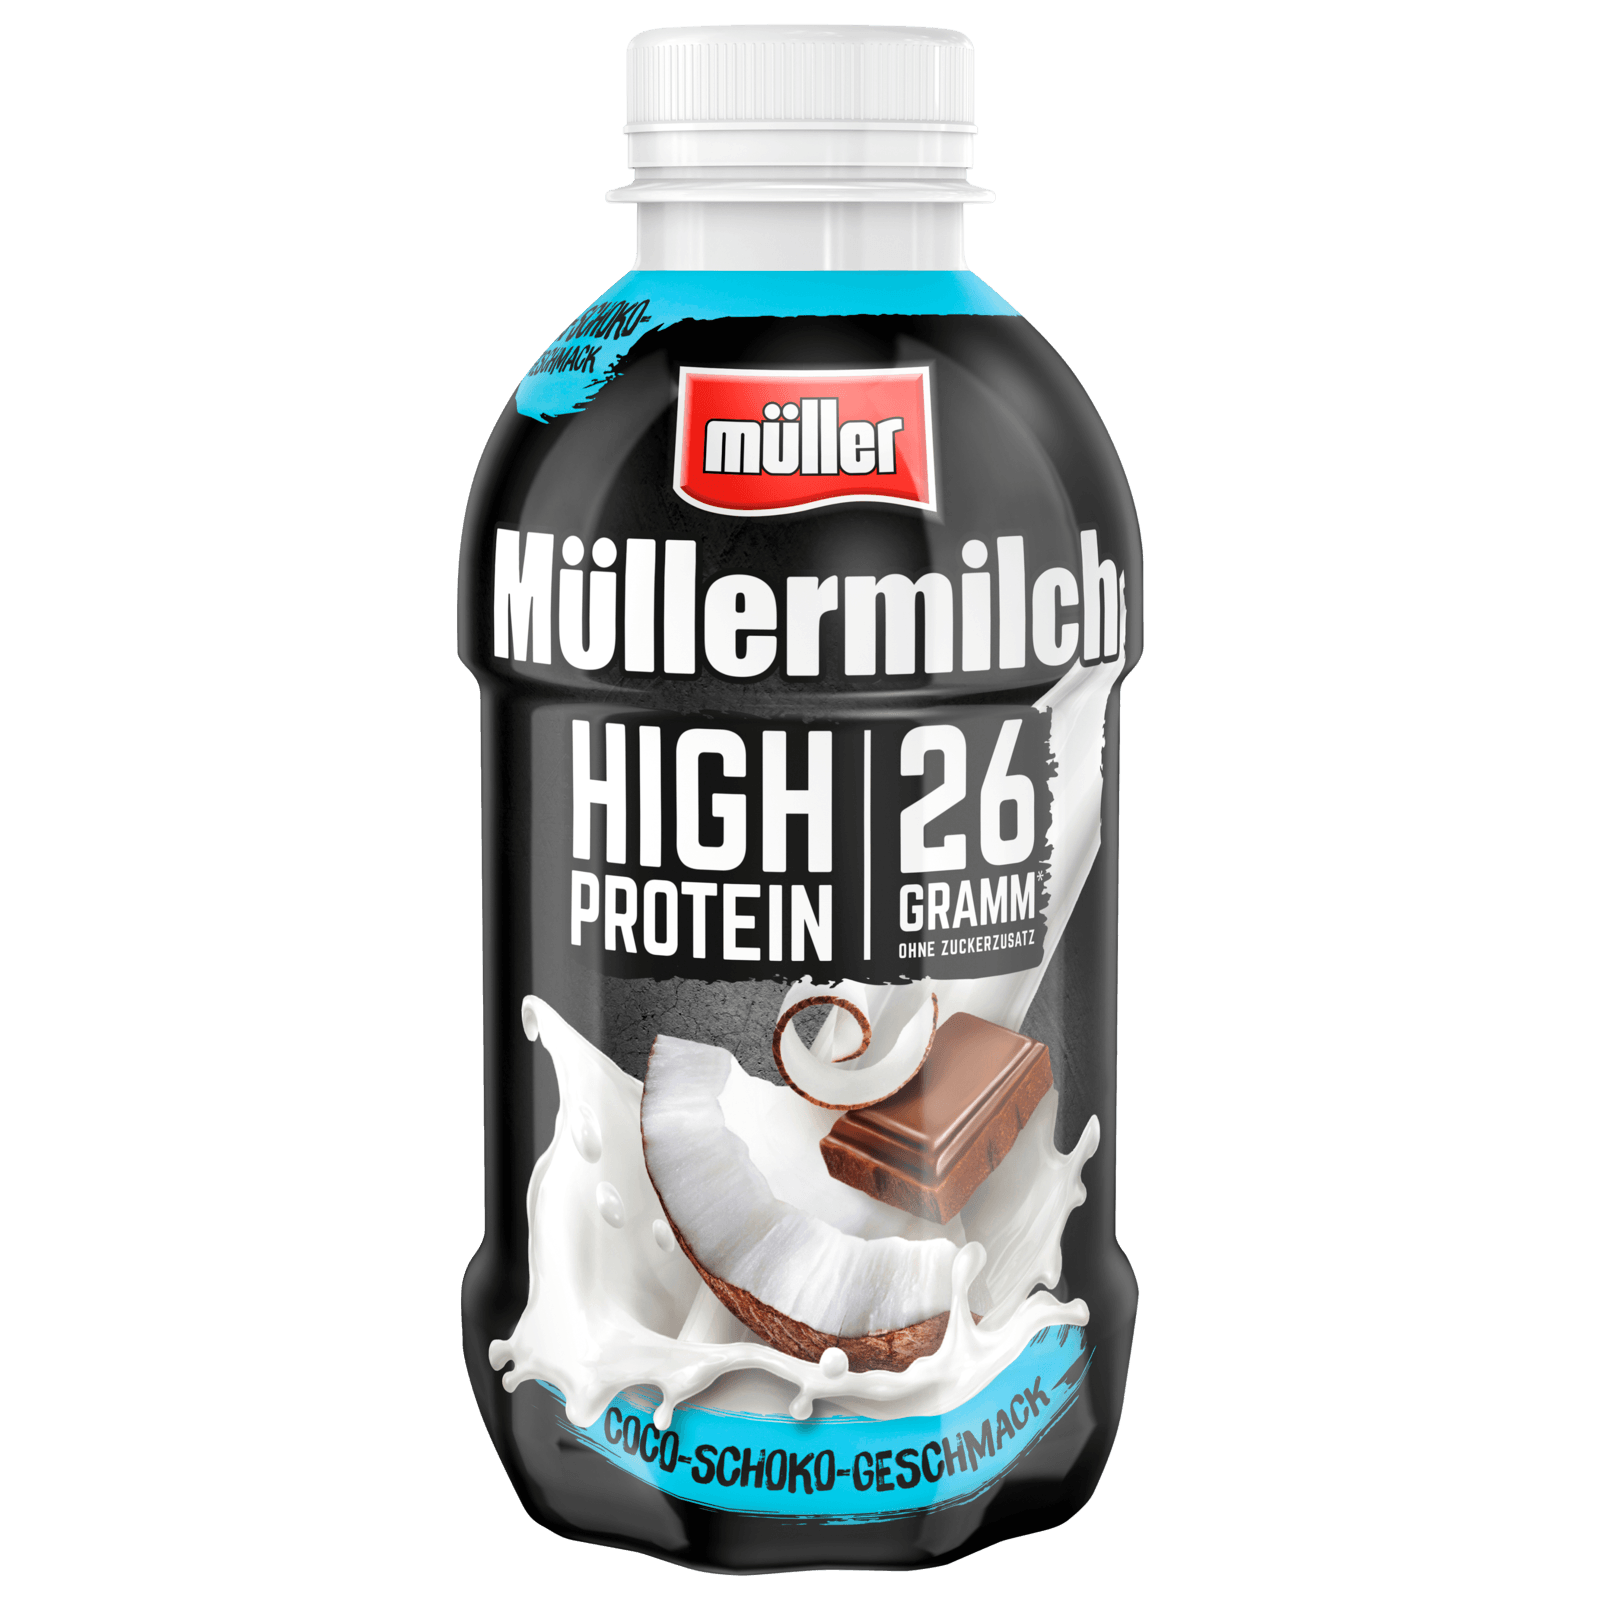 Müller Müllermilch High Protein bei Coco-Schoko online REWE bestellen! 400ml